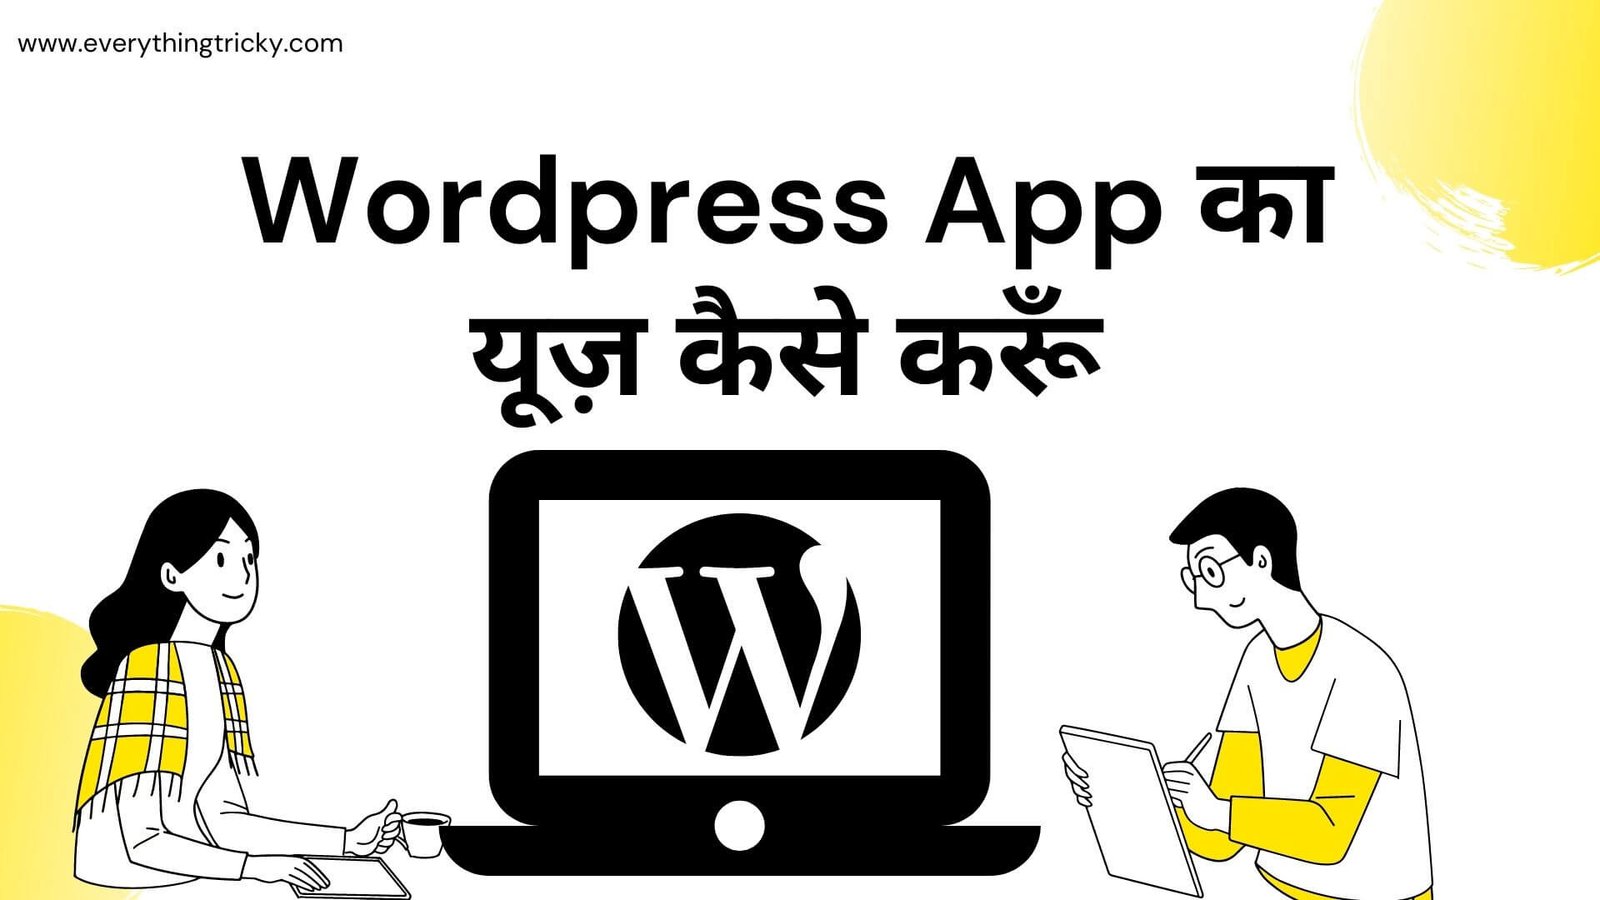 Wordpress App